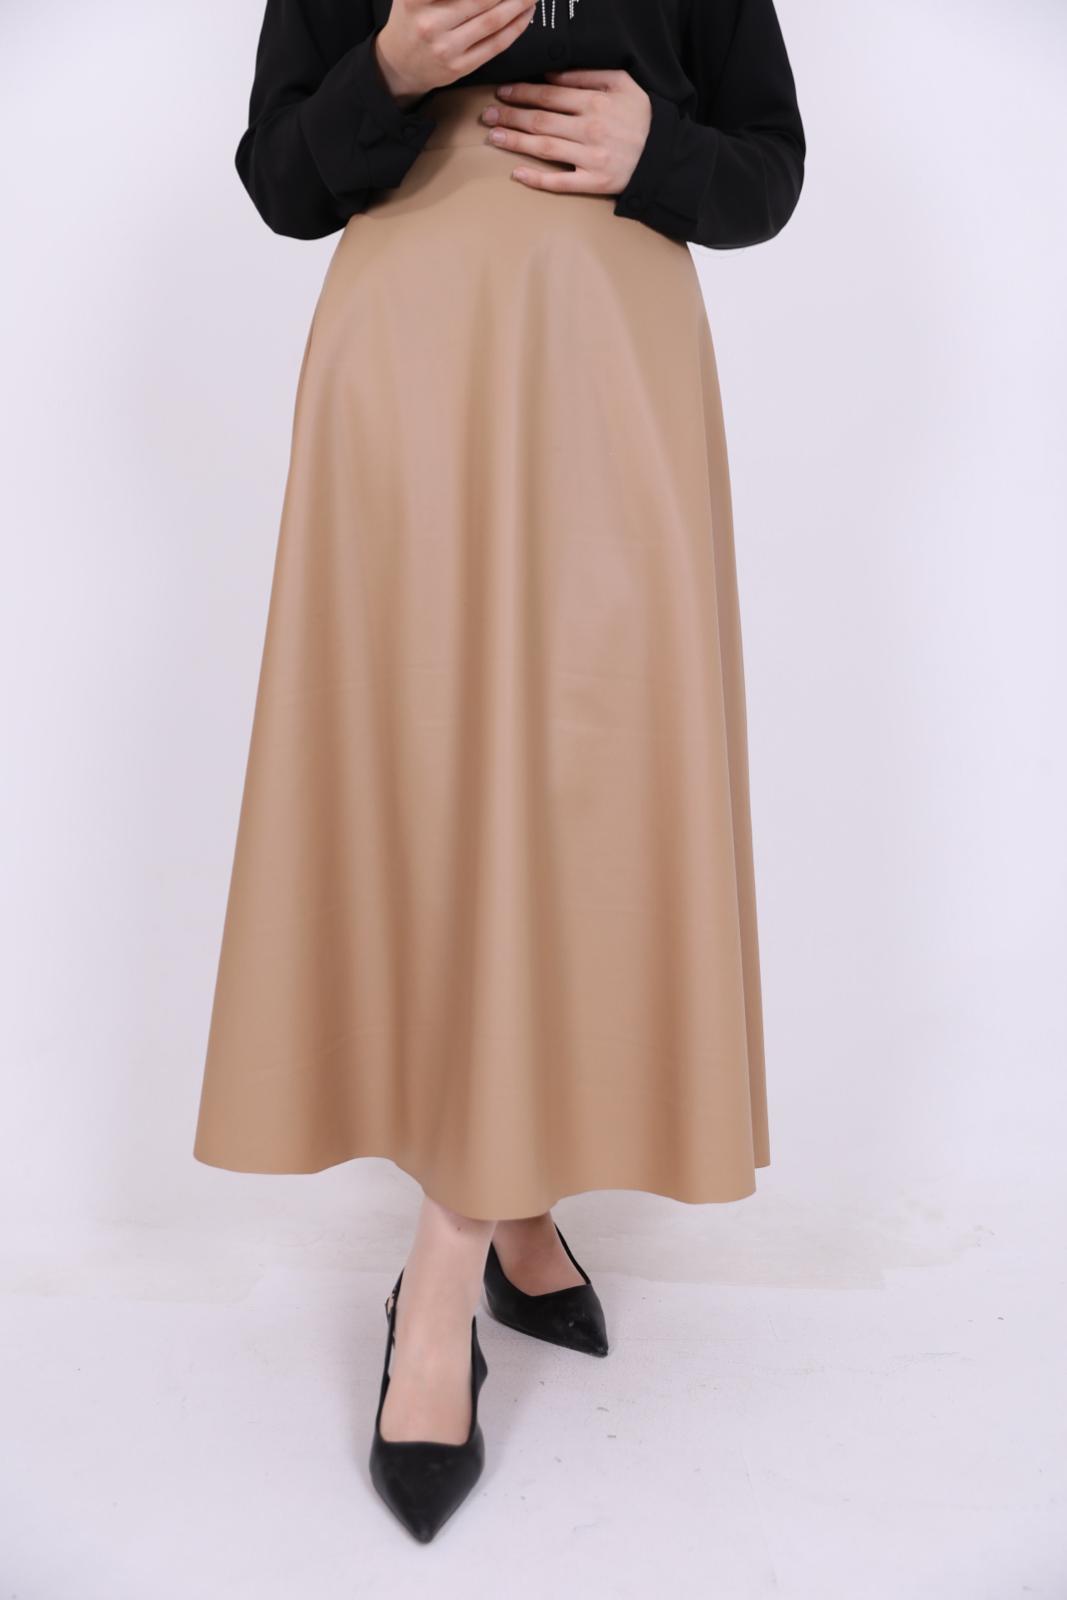 Kiloş Leather Skirt Beige